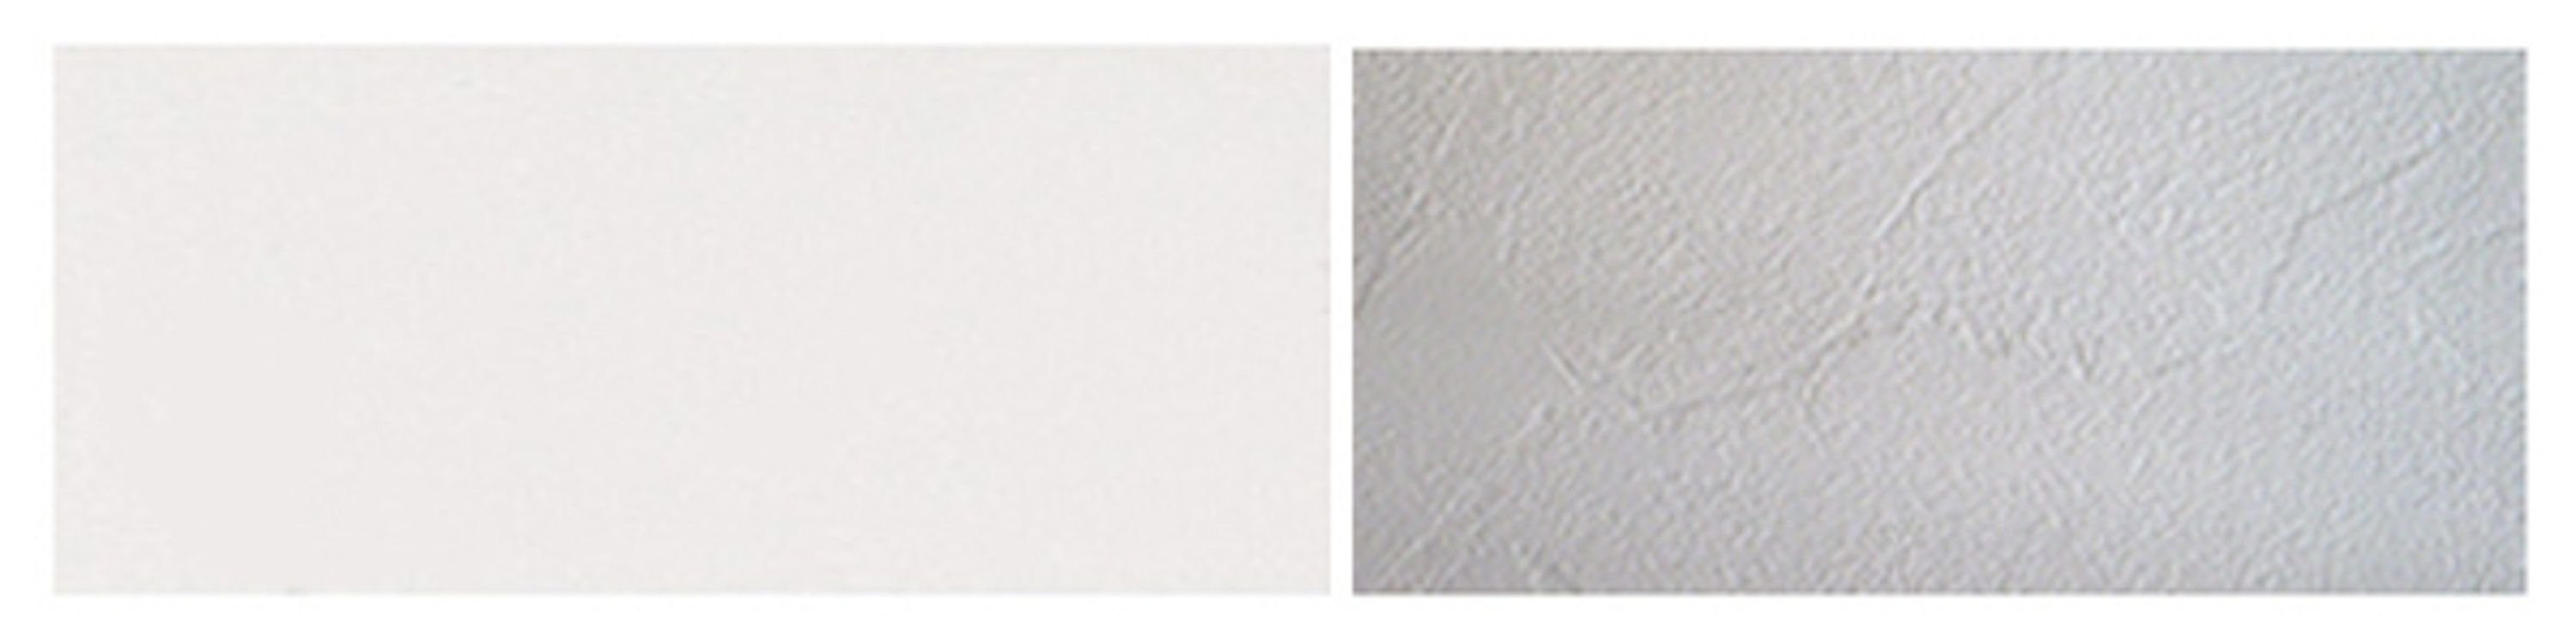 Feldmann-Wohnen Backofenumbauschrank Klapptür Schubladen (Malmo) wählbar 2 60cm Malmo white Korpusfarbe & ares (Teilauszug) Front